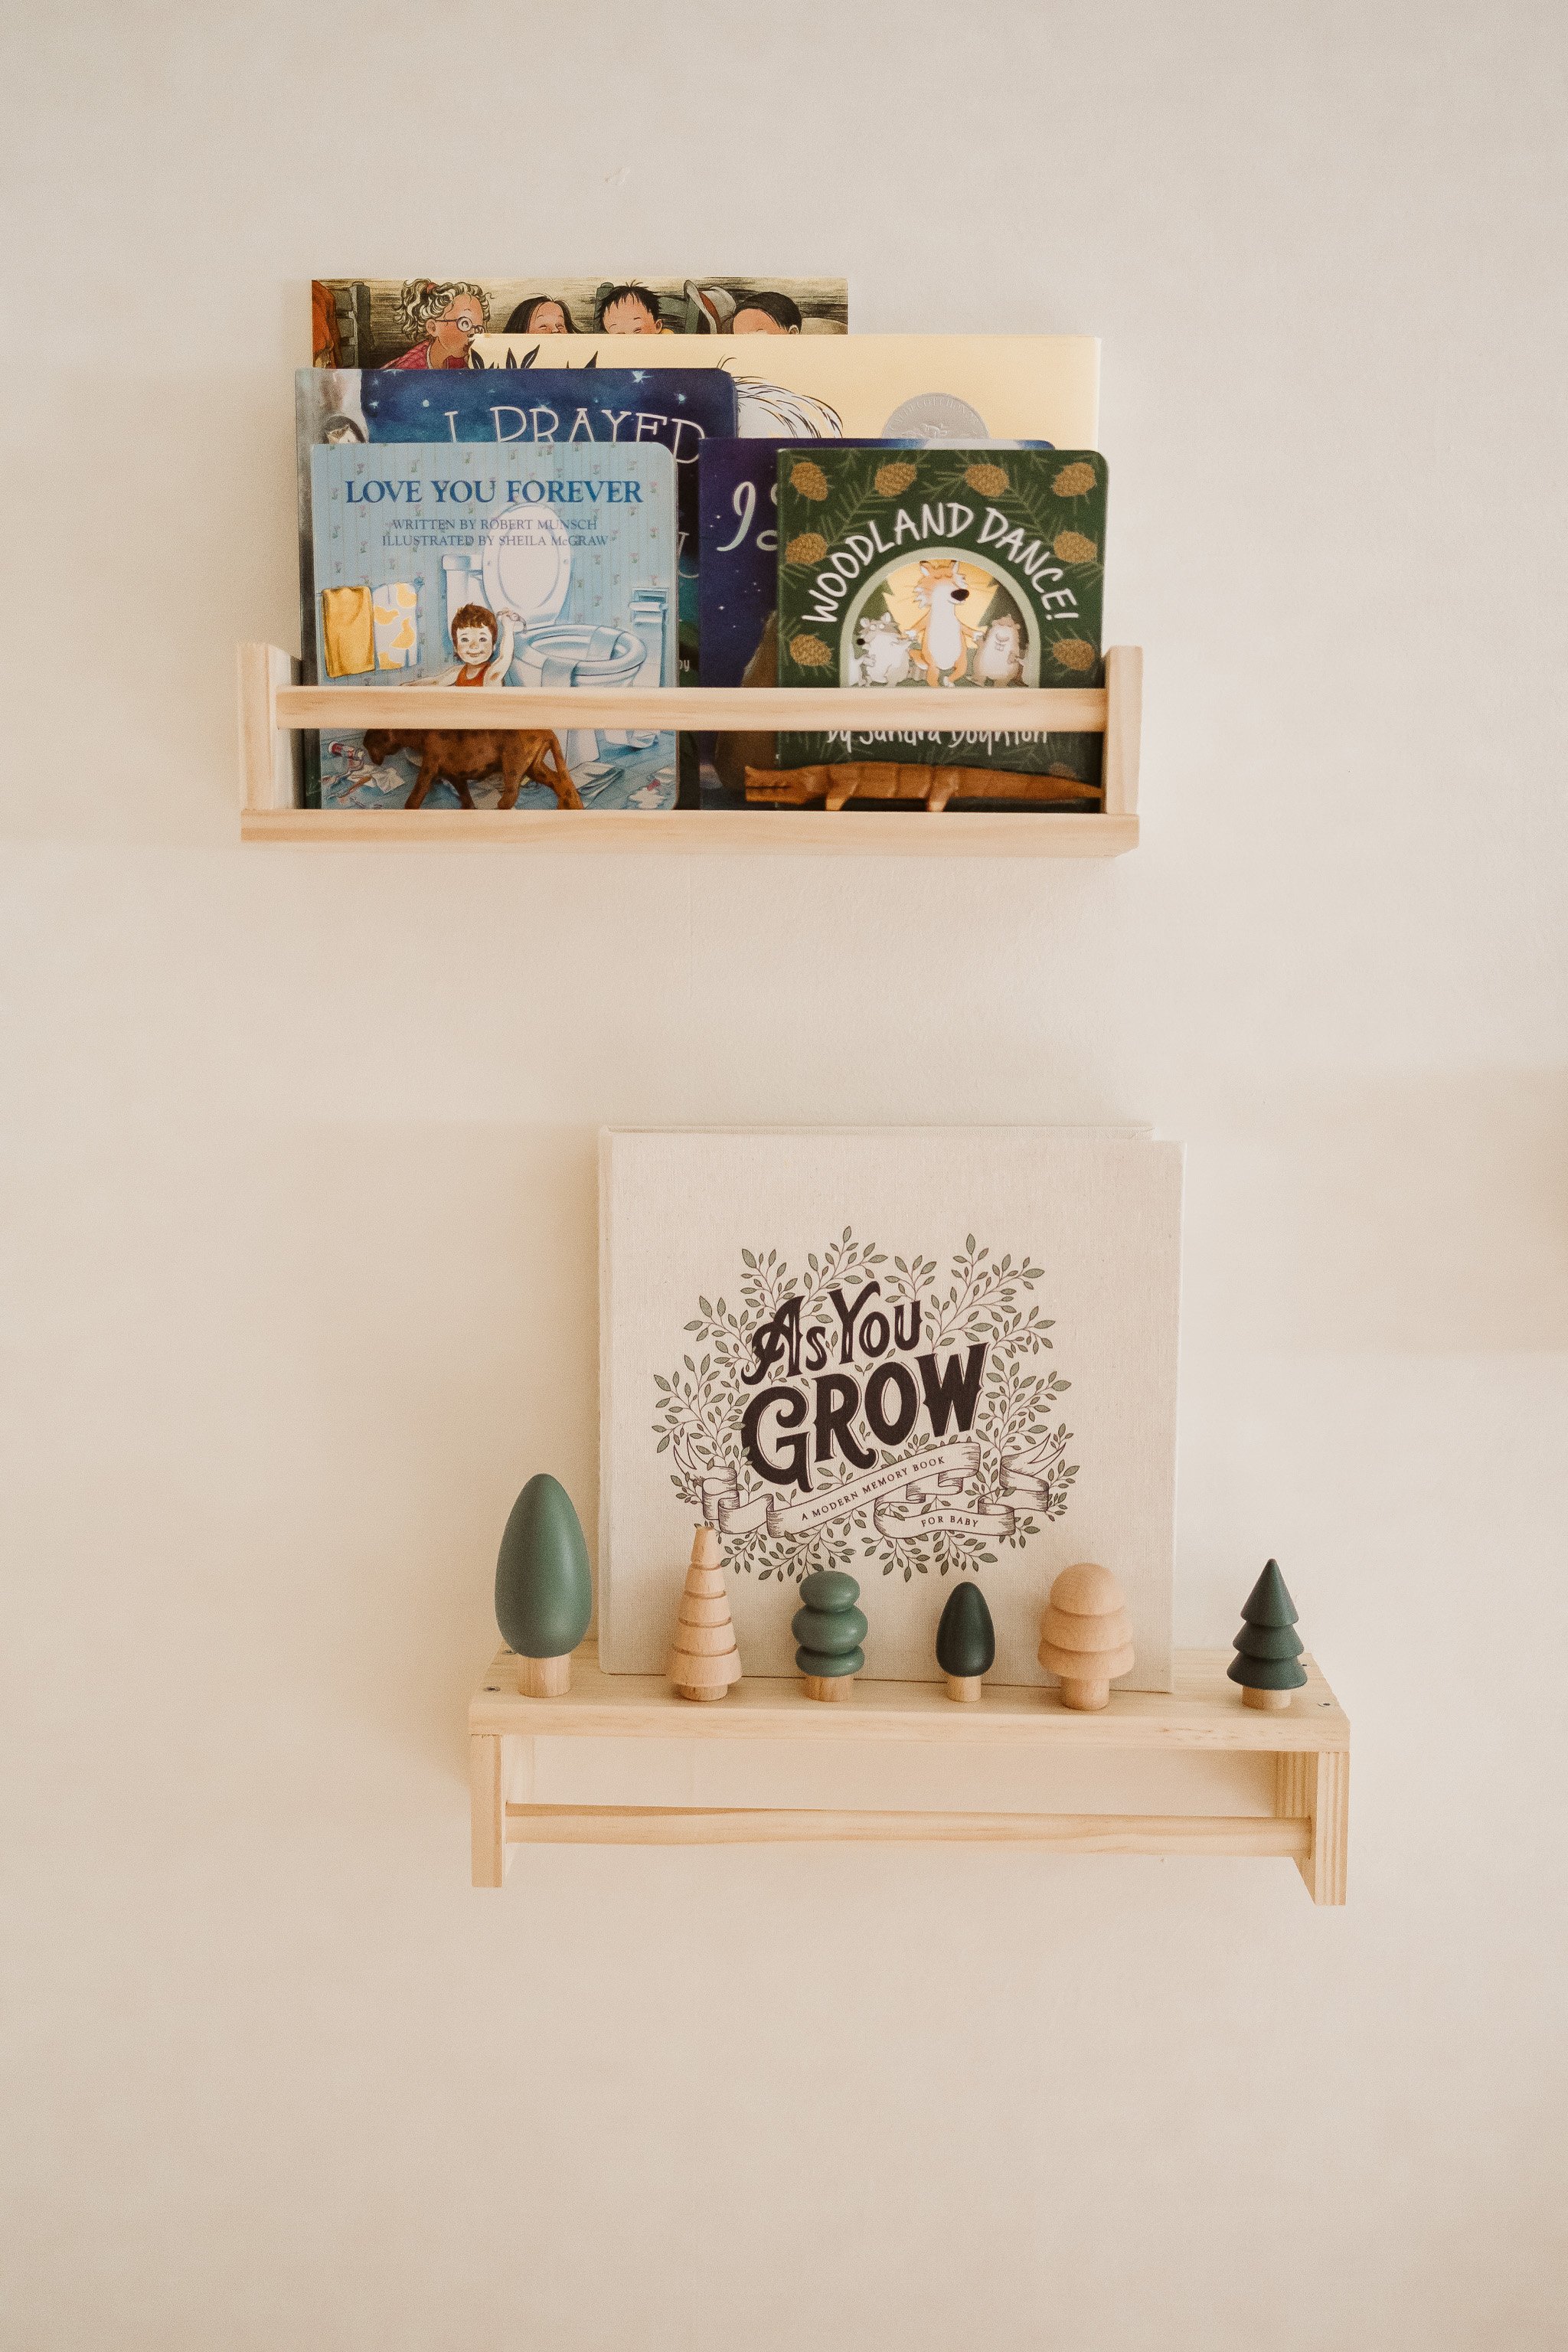 wooden-bookshelves-new-baby-books-tree-ornaments-family-photographer-autumn-skye.jpg